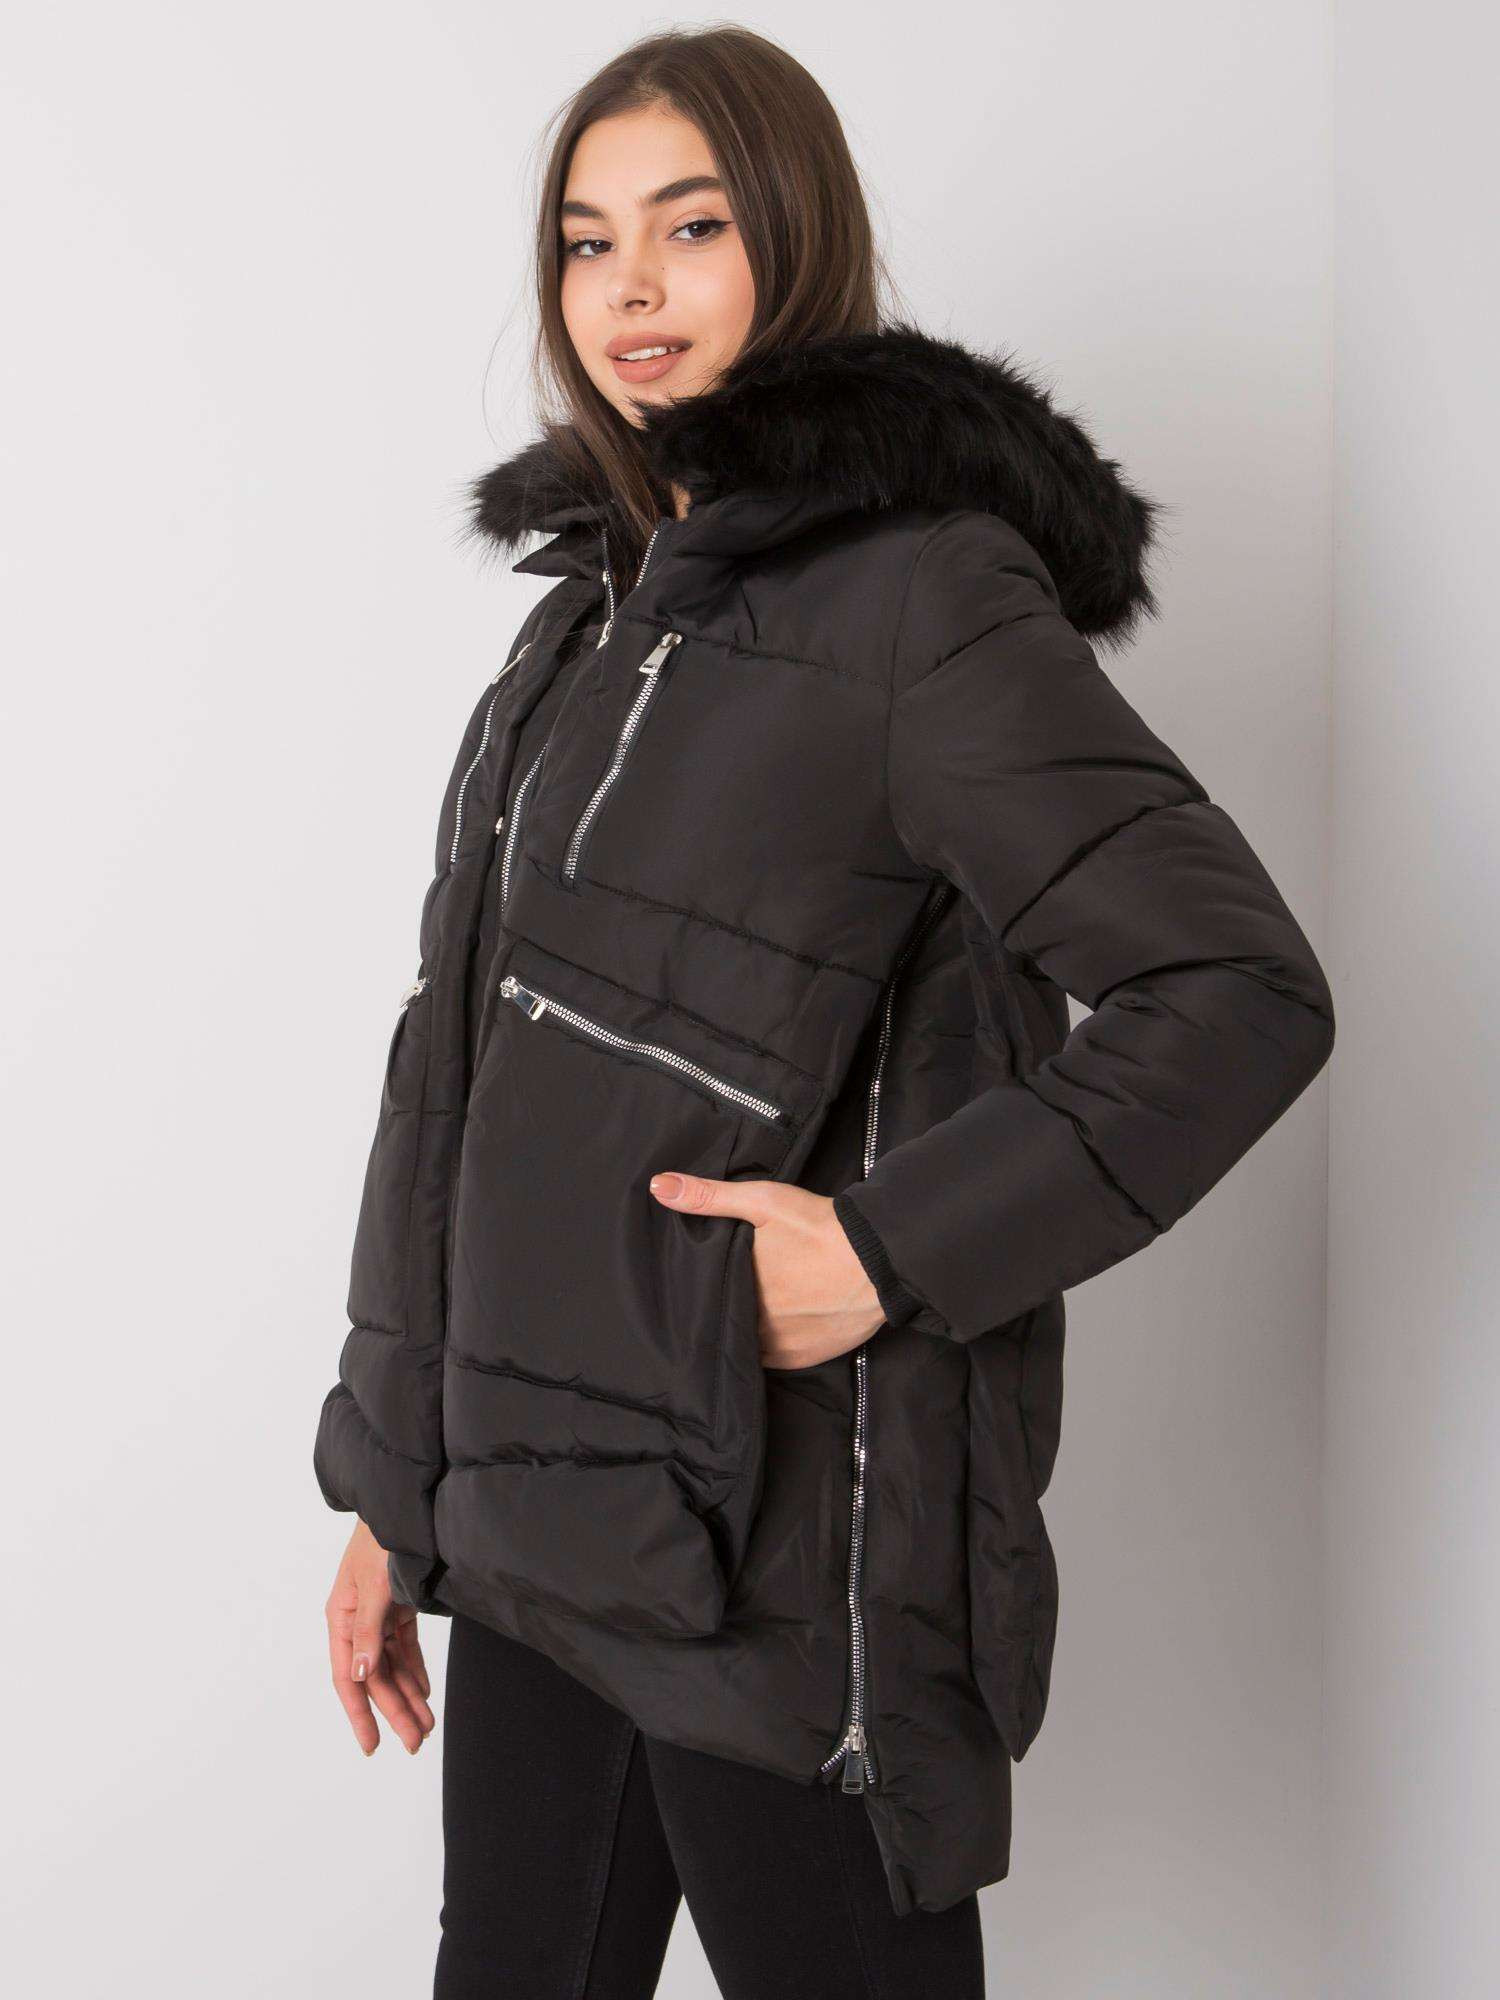 Dámský kabát NM KR H 1072 černý XL